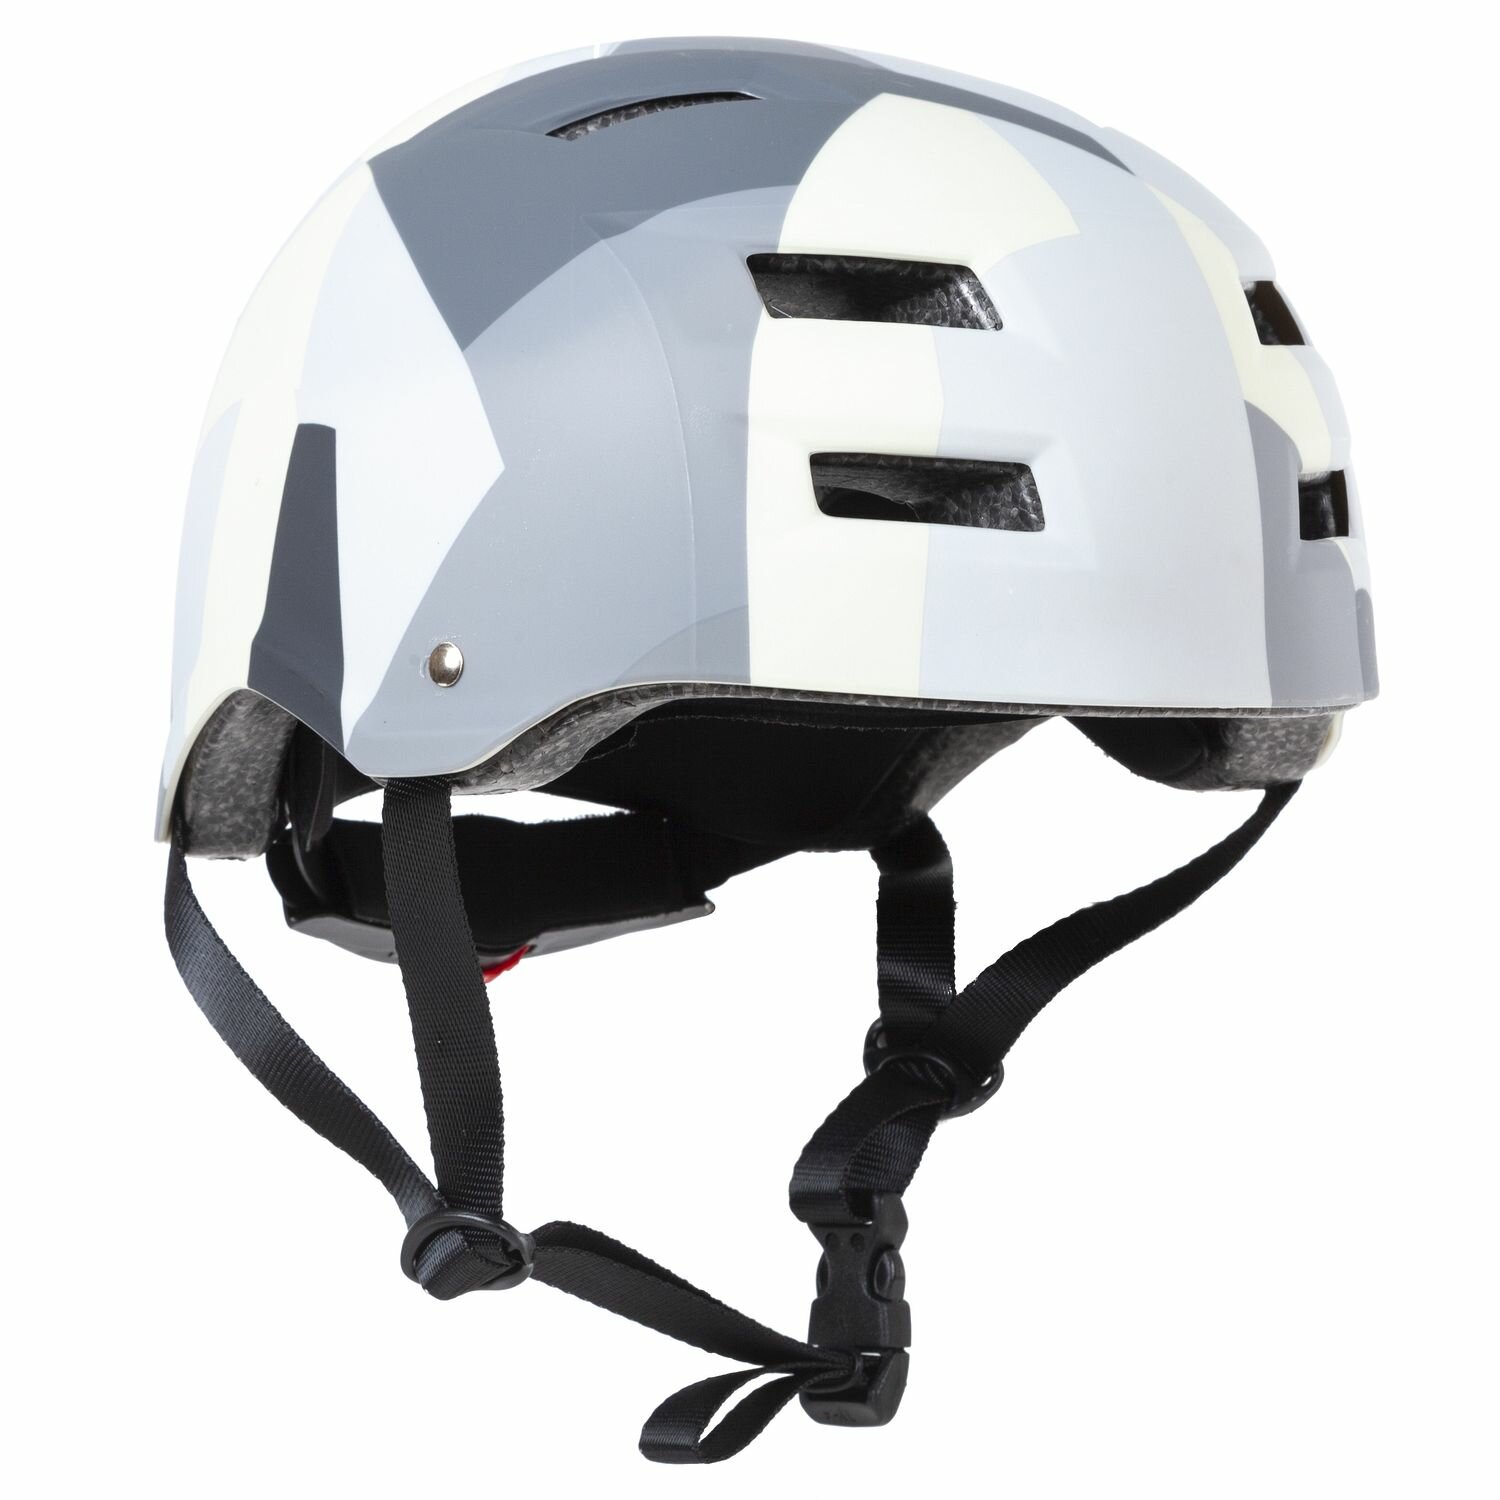 Шлем велосипедный STG MTV1, размер S, 53-55 см, Military с фикс застежкой, серый